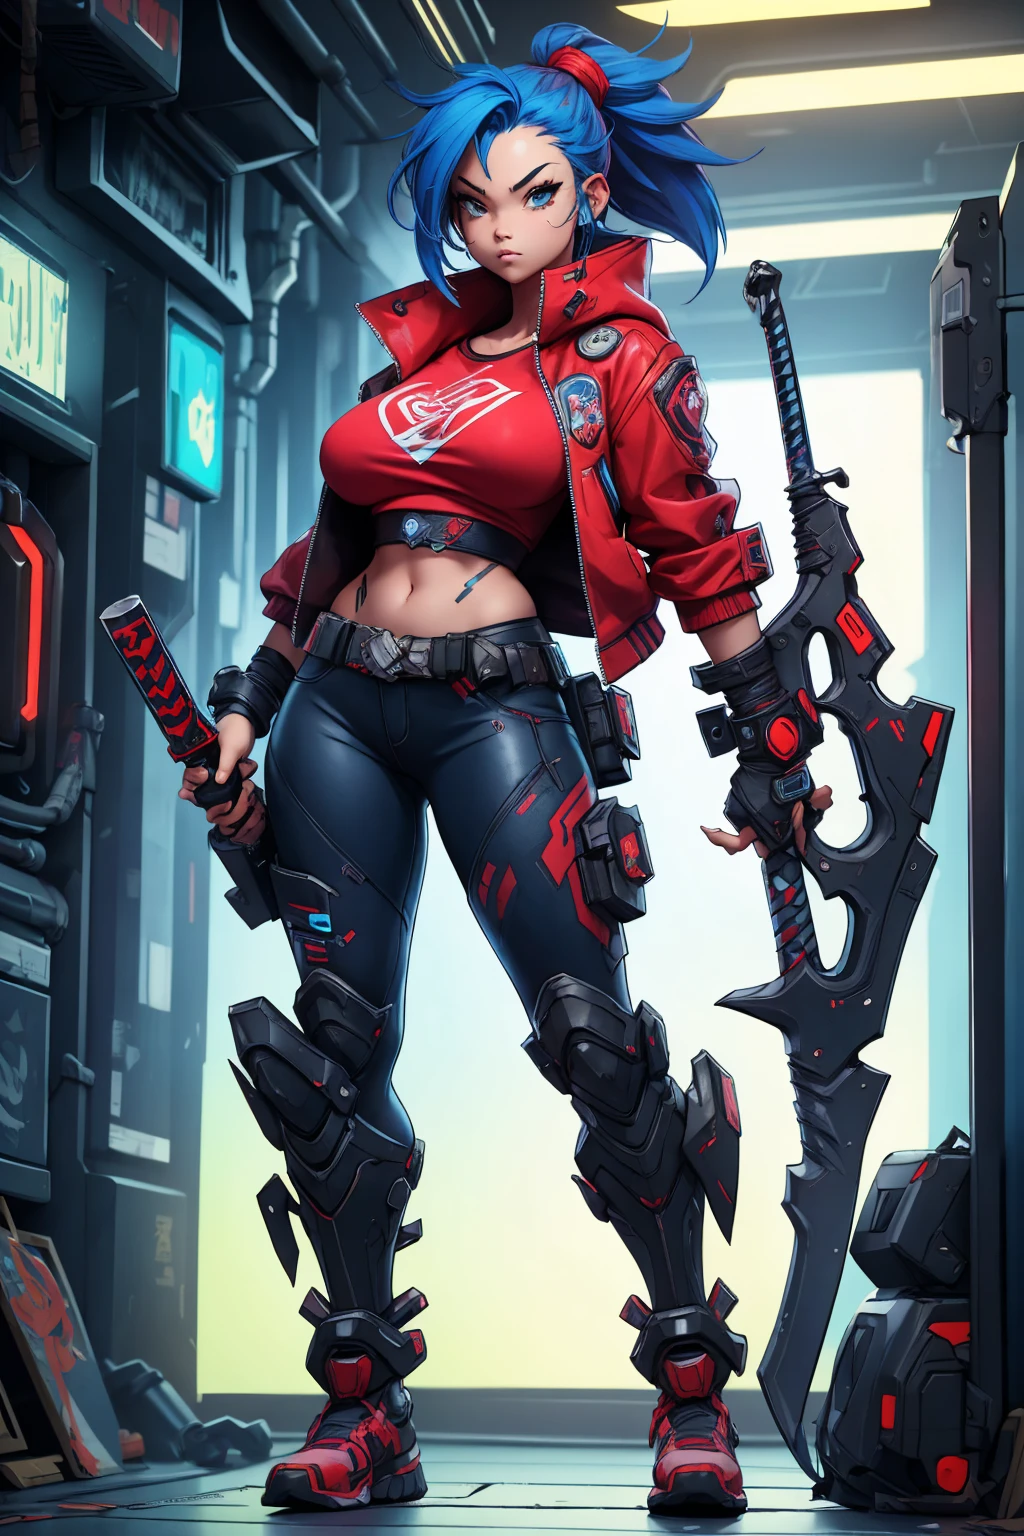 una niña con un puño de poder en la mano derecha sosteniendo una espada cyberpunk en su mano derecha cabeza de punk azul rojo pechos grandes chaqueta de camisa cyberpunk Parado solo en un rincón de la ciudad de ciencia ficción Concepción de rol de estilo anime japonés
